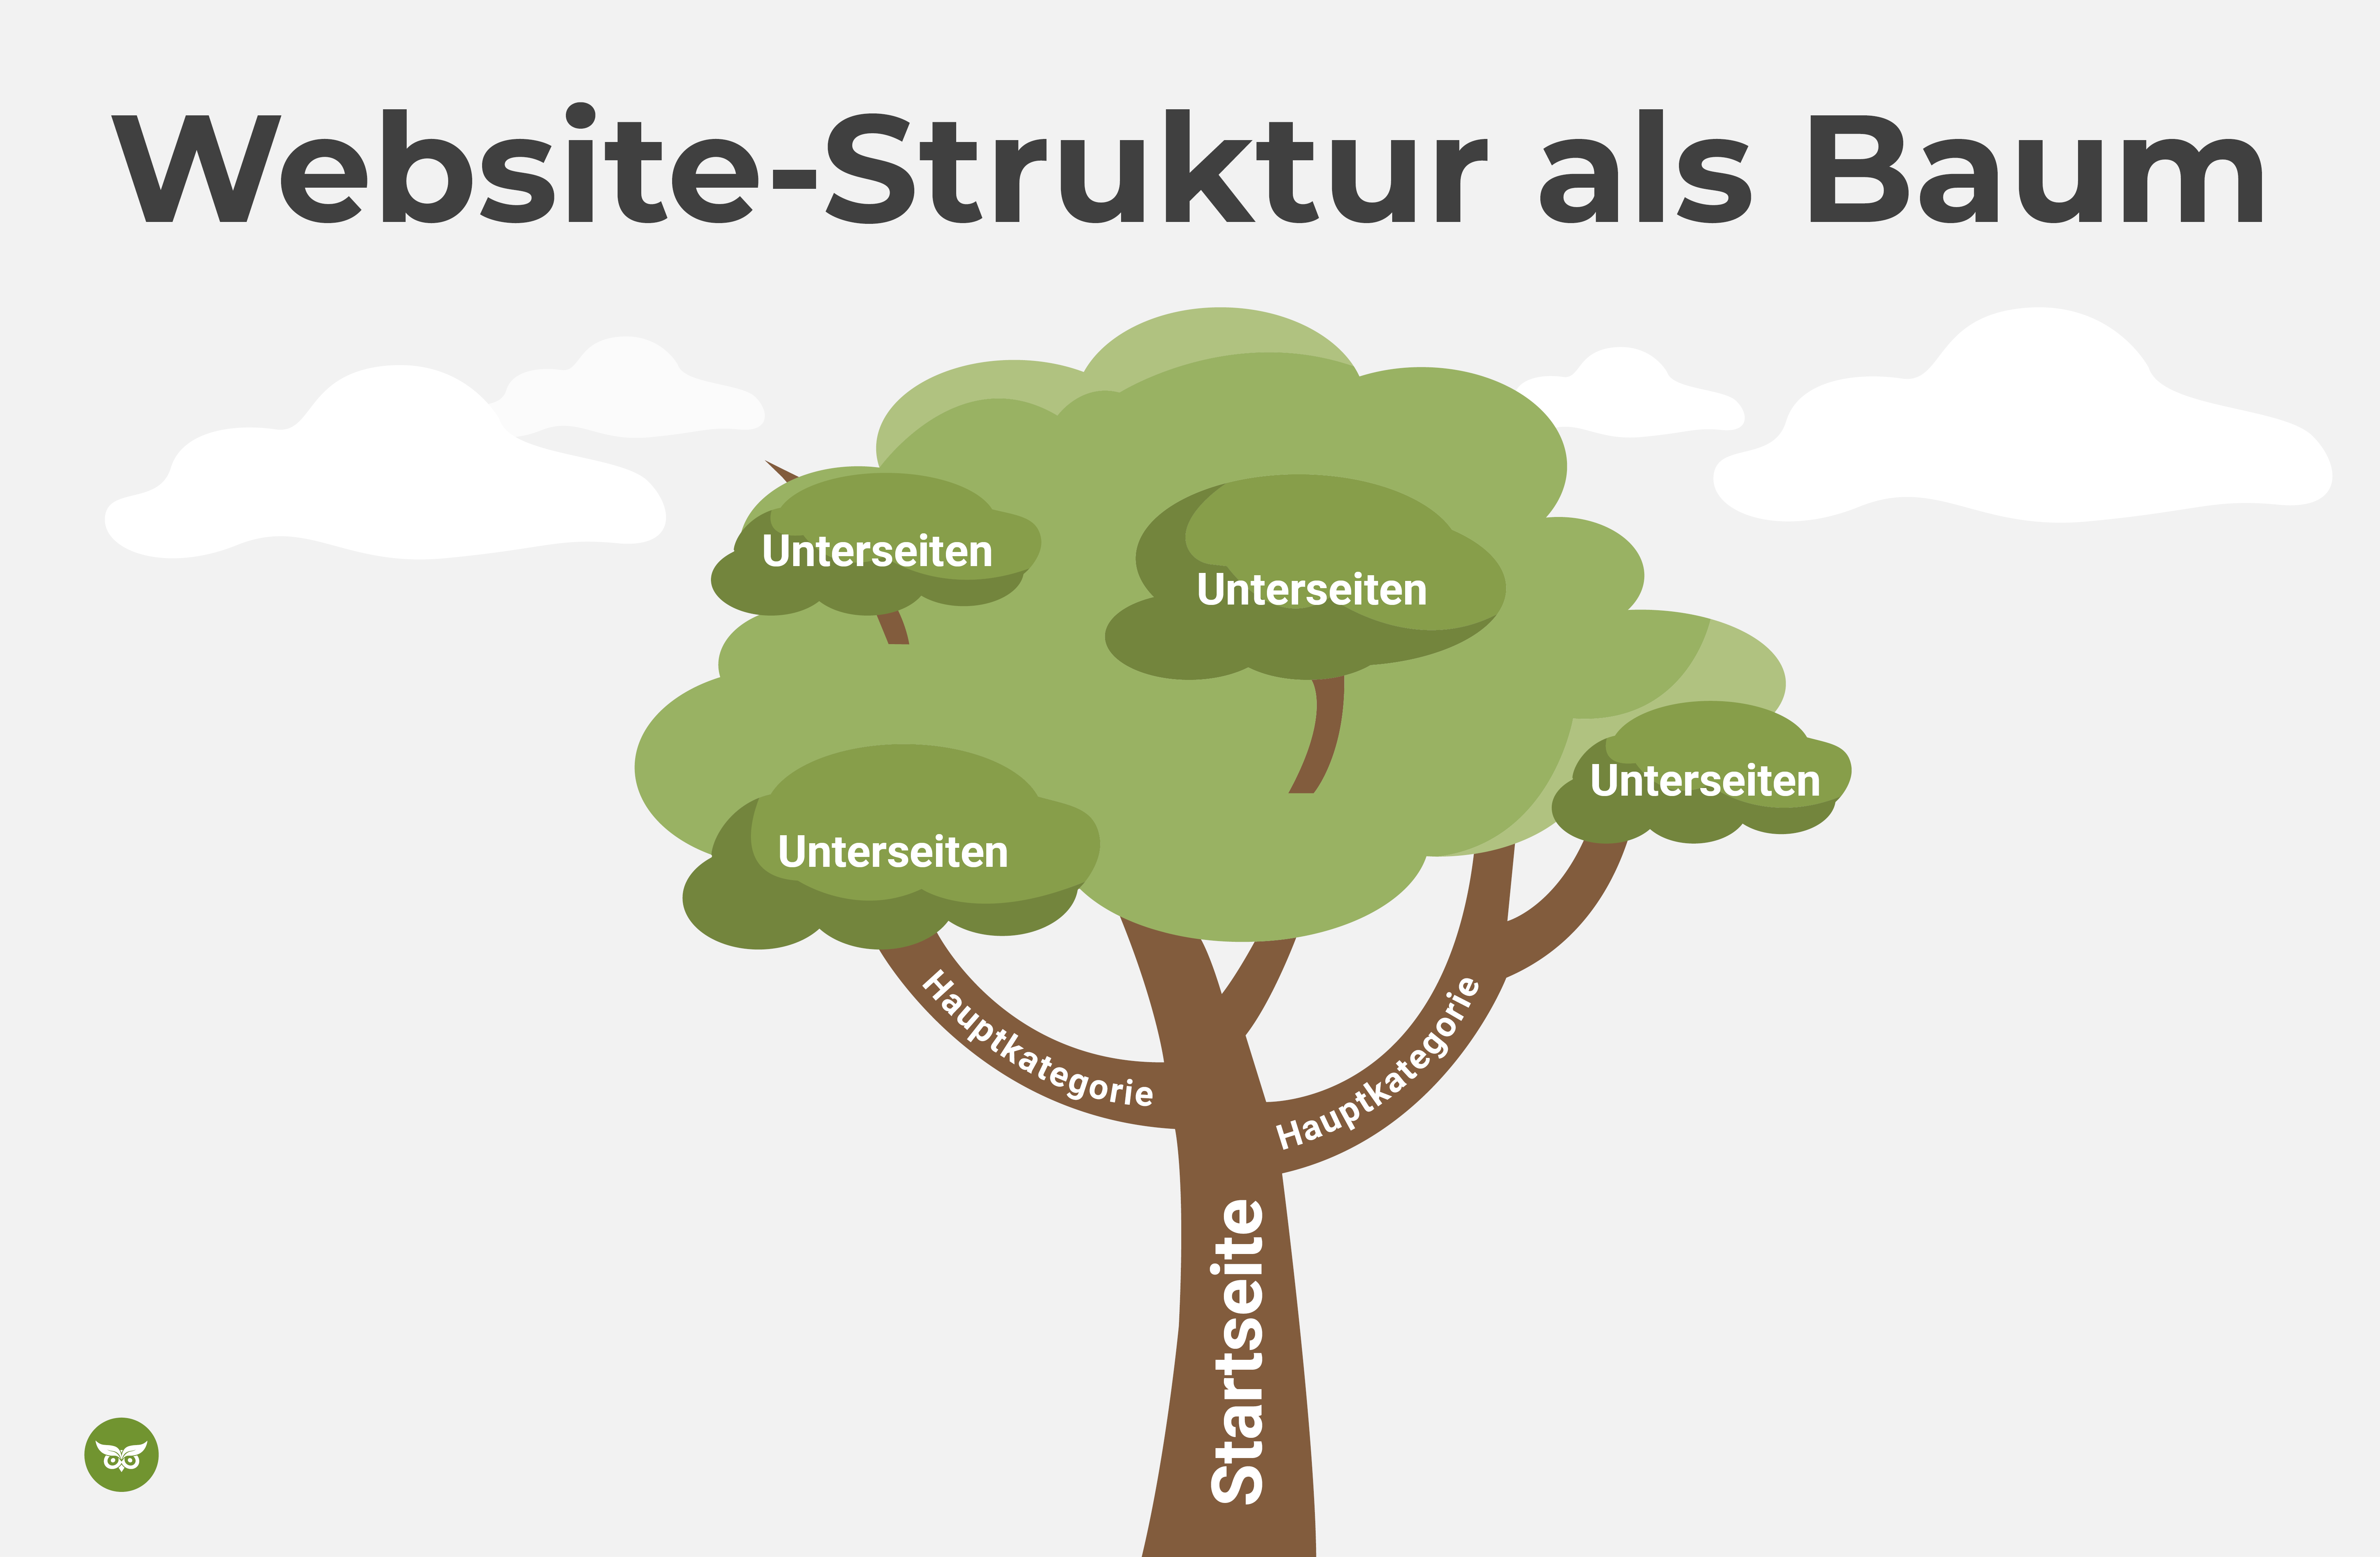 Website-Struktur als Baum